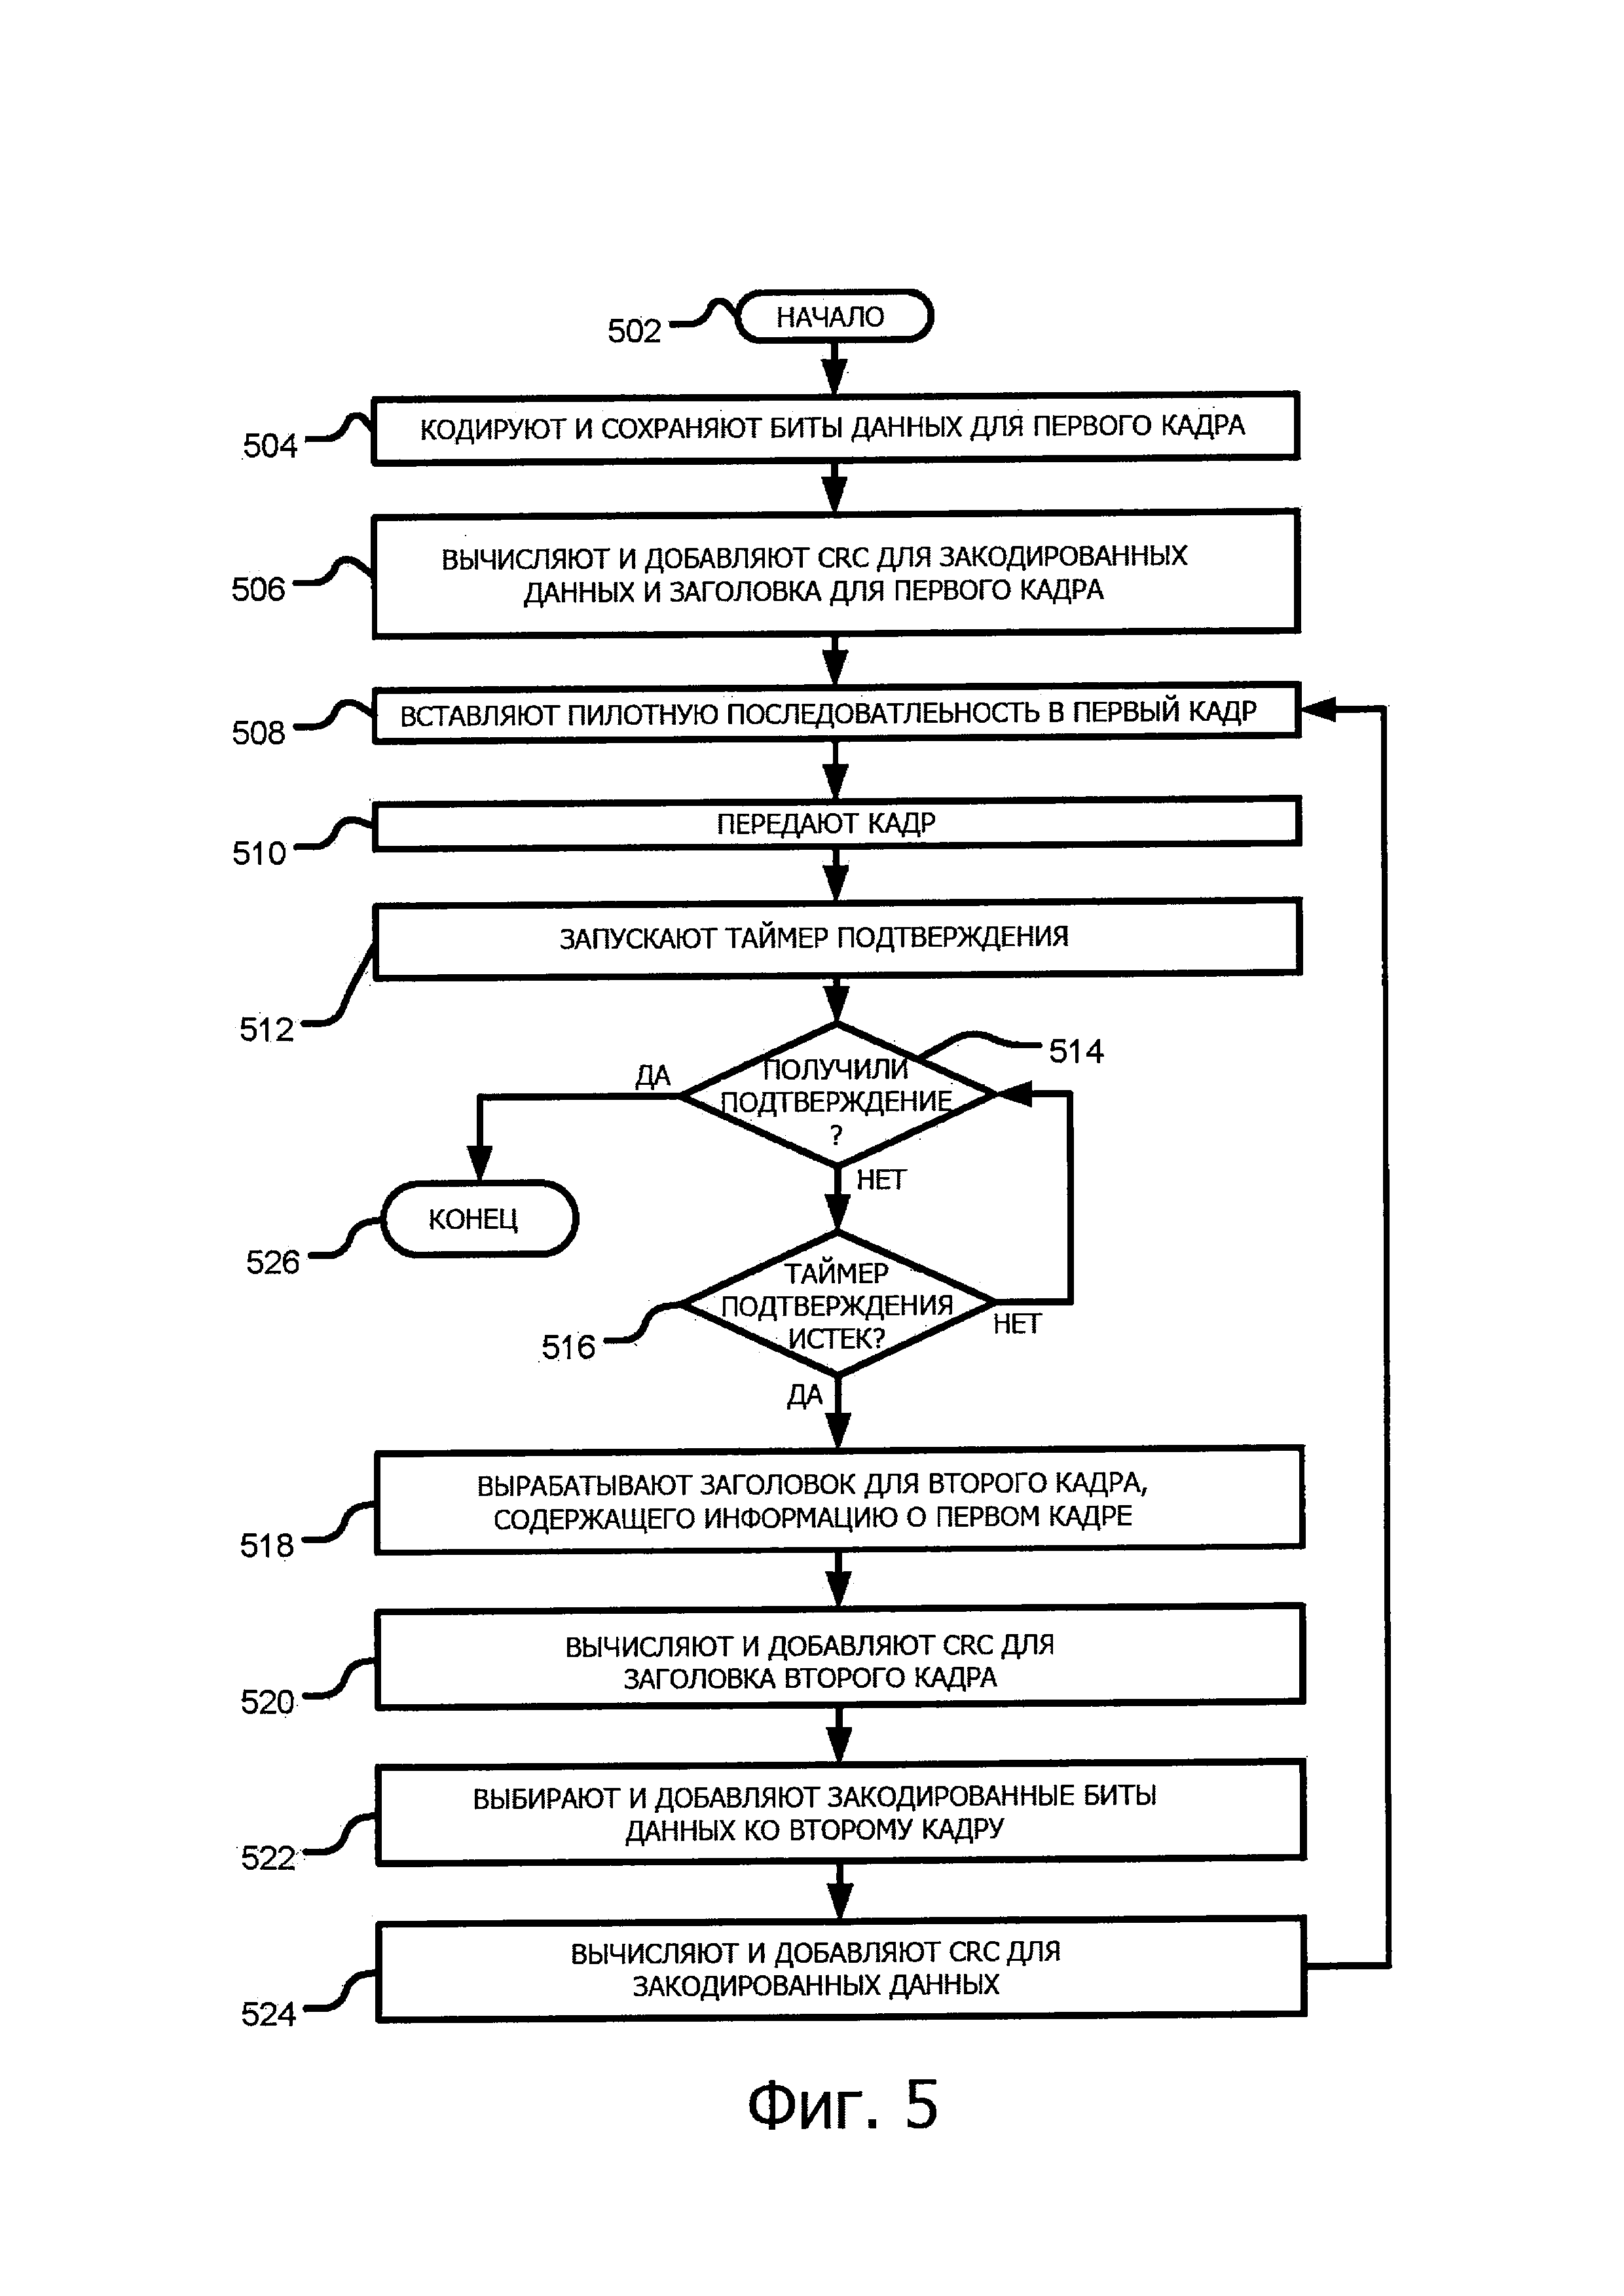 Структура данных кадра HARQ и способ передачи и приема с HARQ в системах, использующих слепое обнаружение